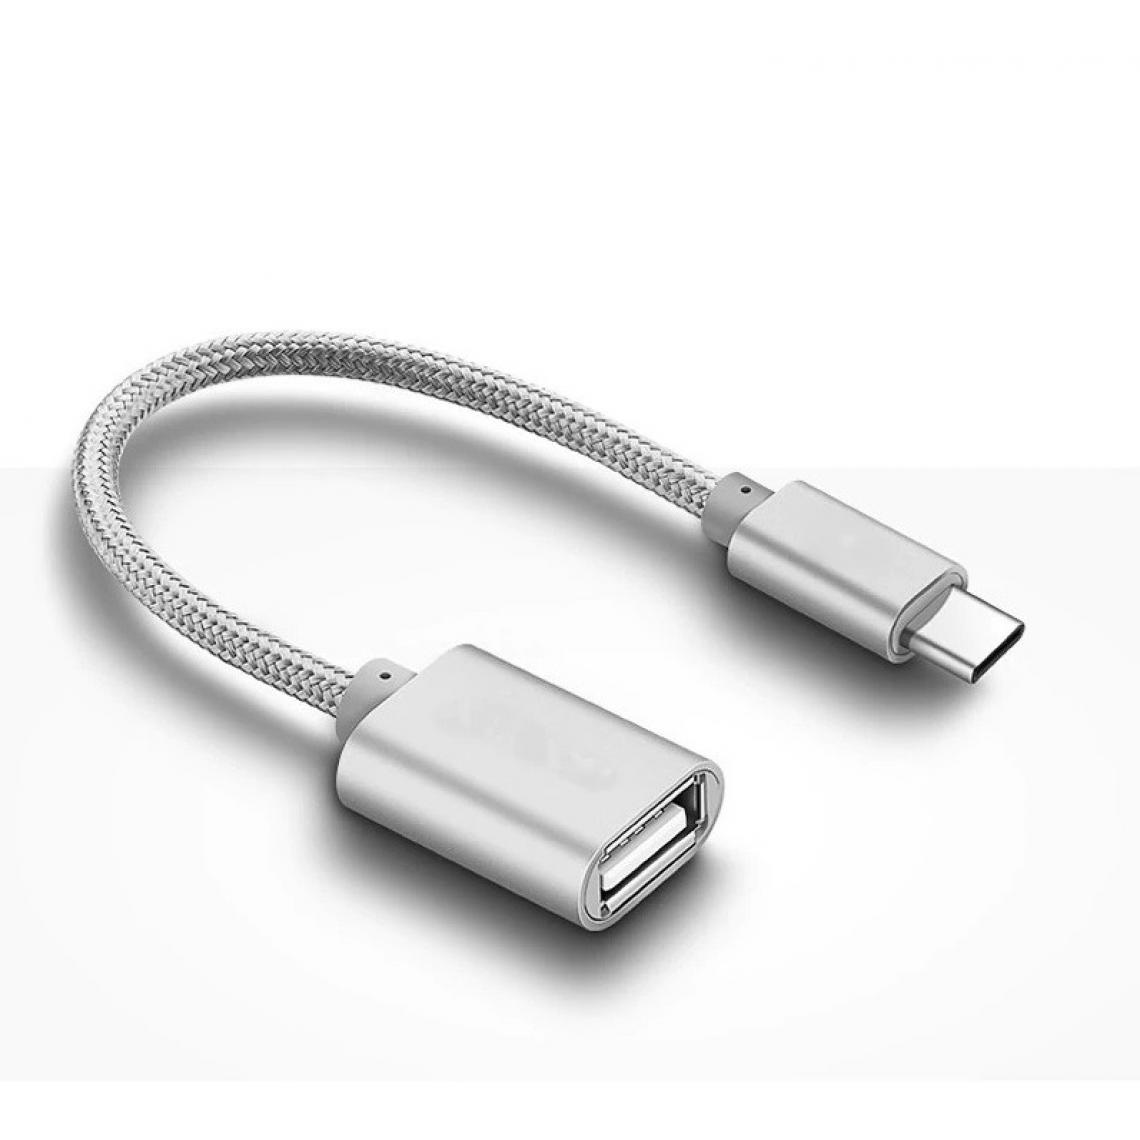 Shot - Adaptateur Type C/USB pour XIAOMI Mi Note 10 Pro Smartphone & MAC USB-C Clef (ARGENT) - Autres accessoires smartphone